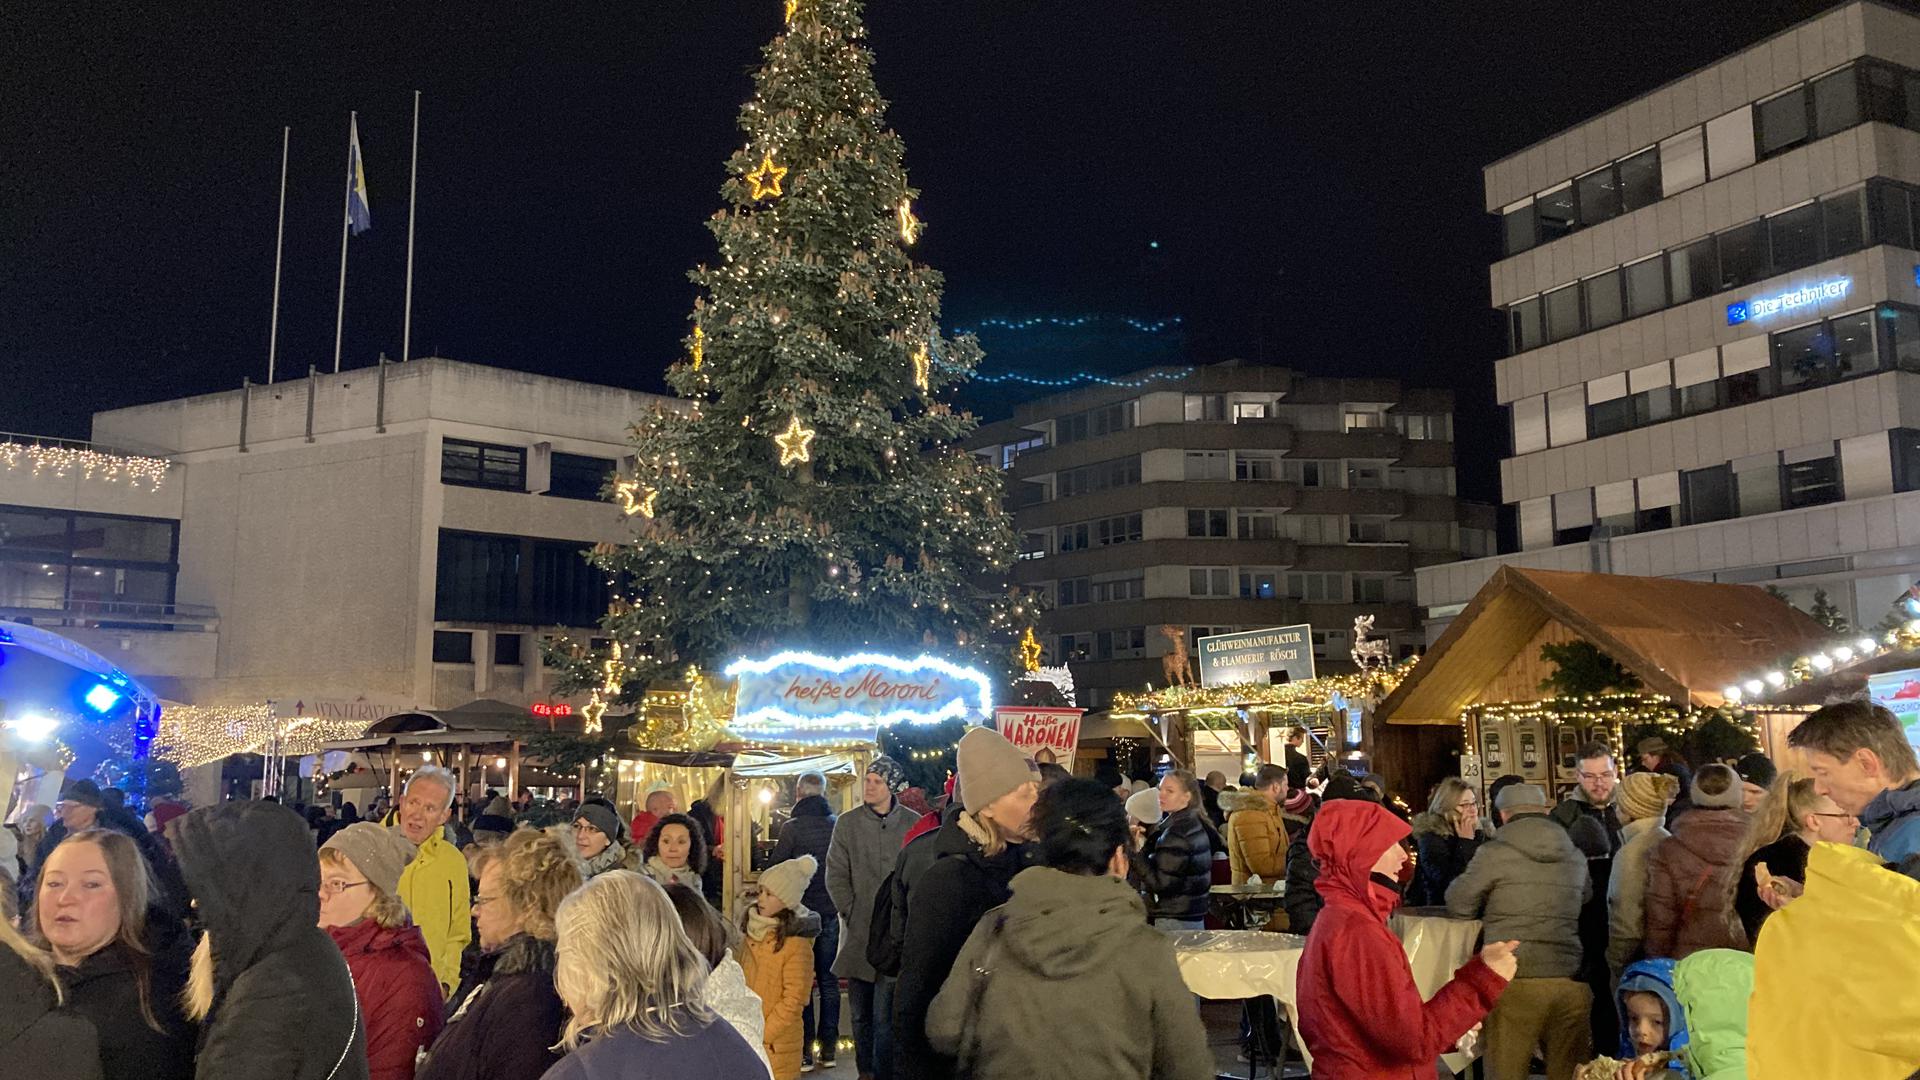 Weihnachtsmarkt auf dem Marktplatz von Pforzheim